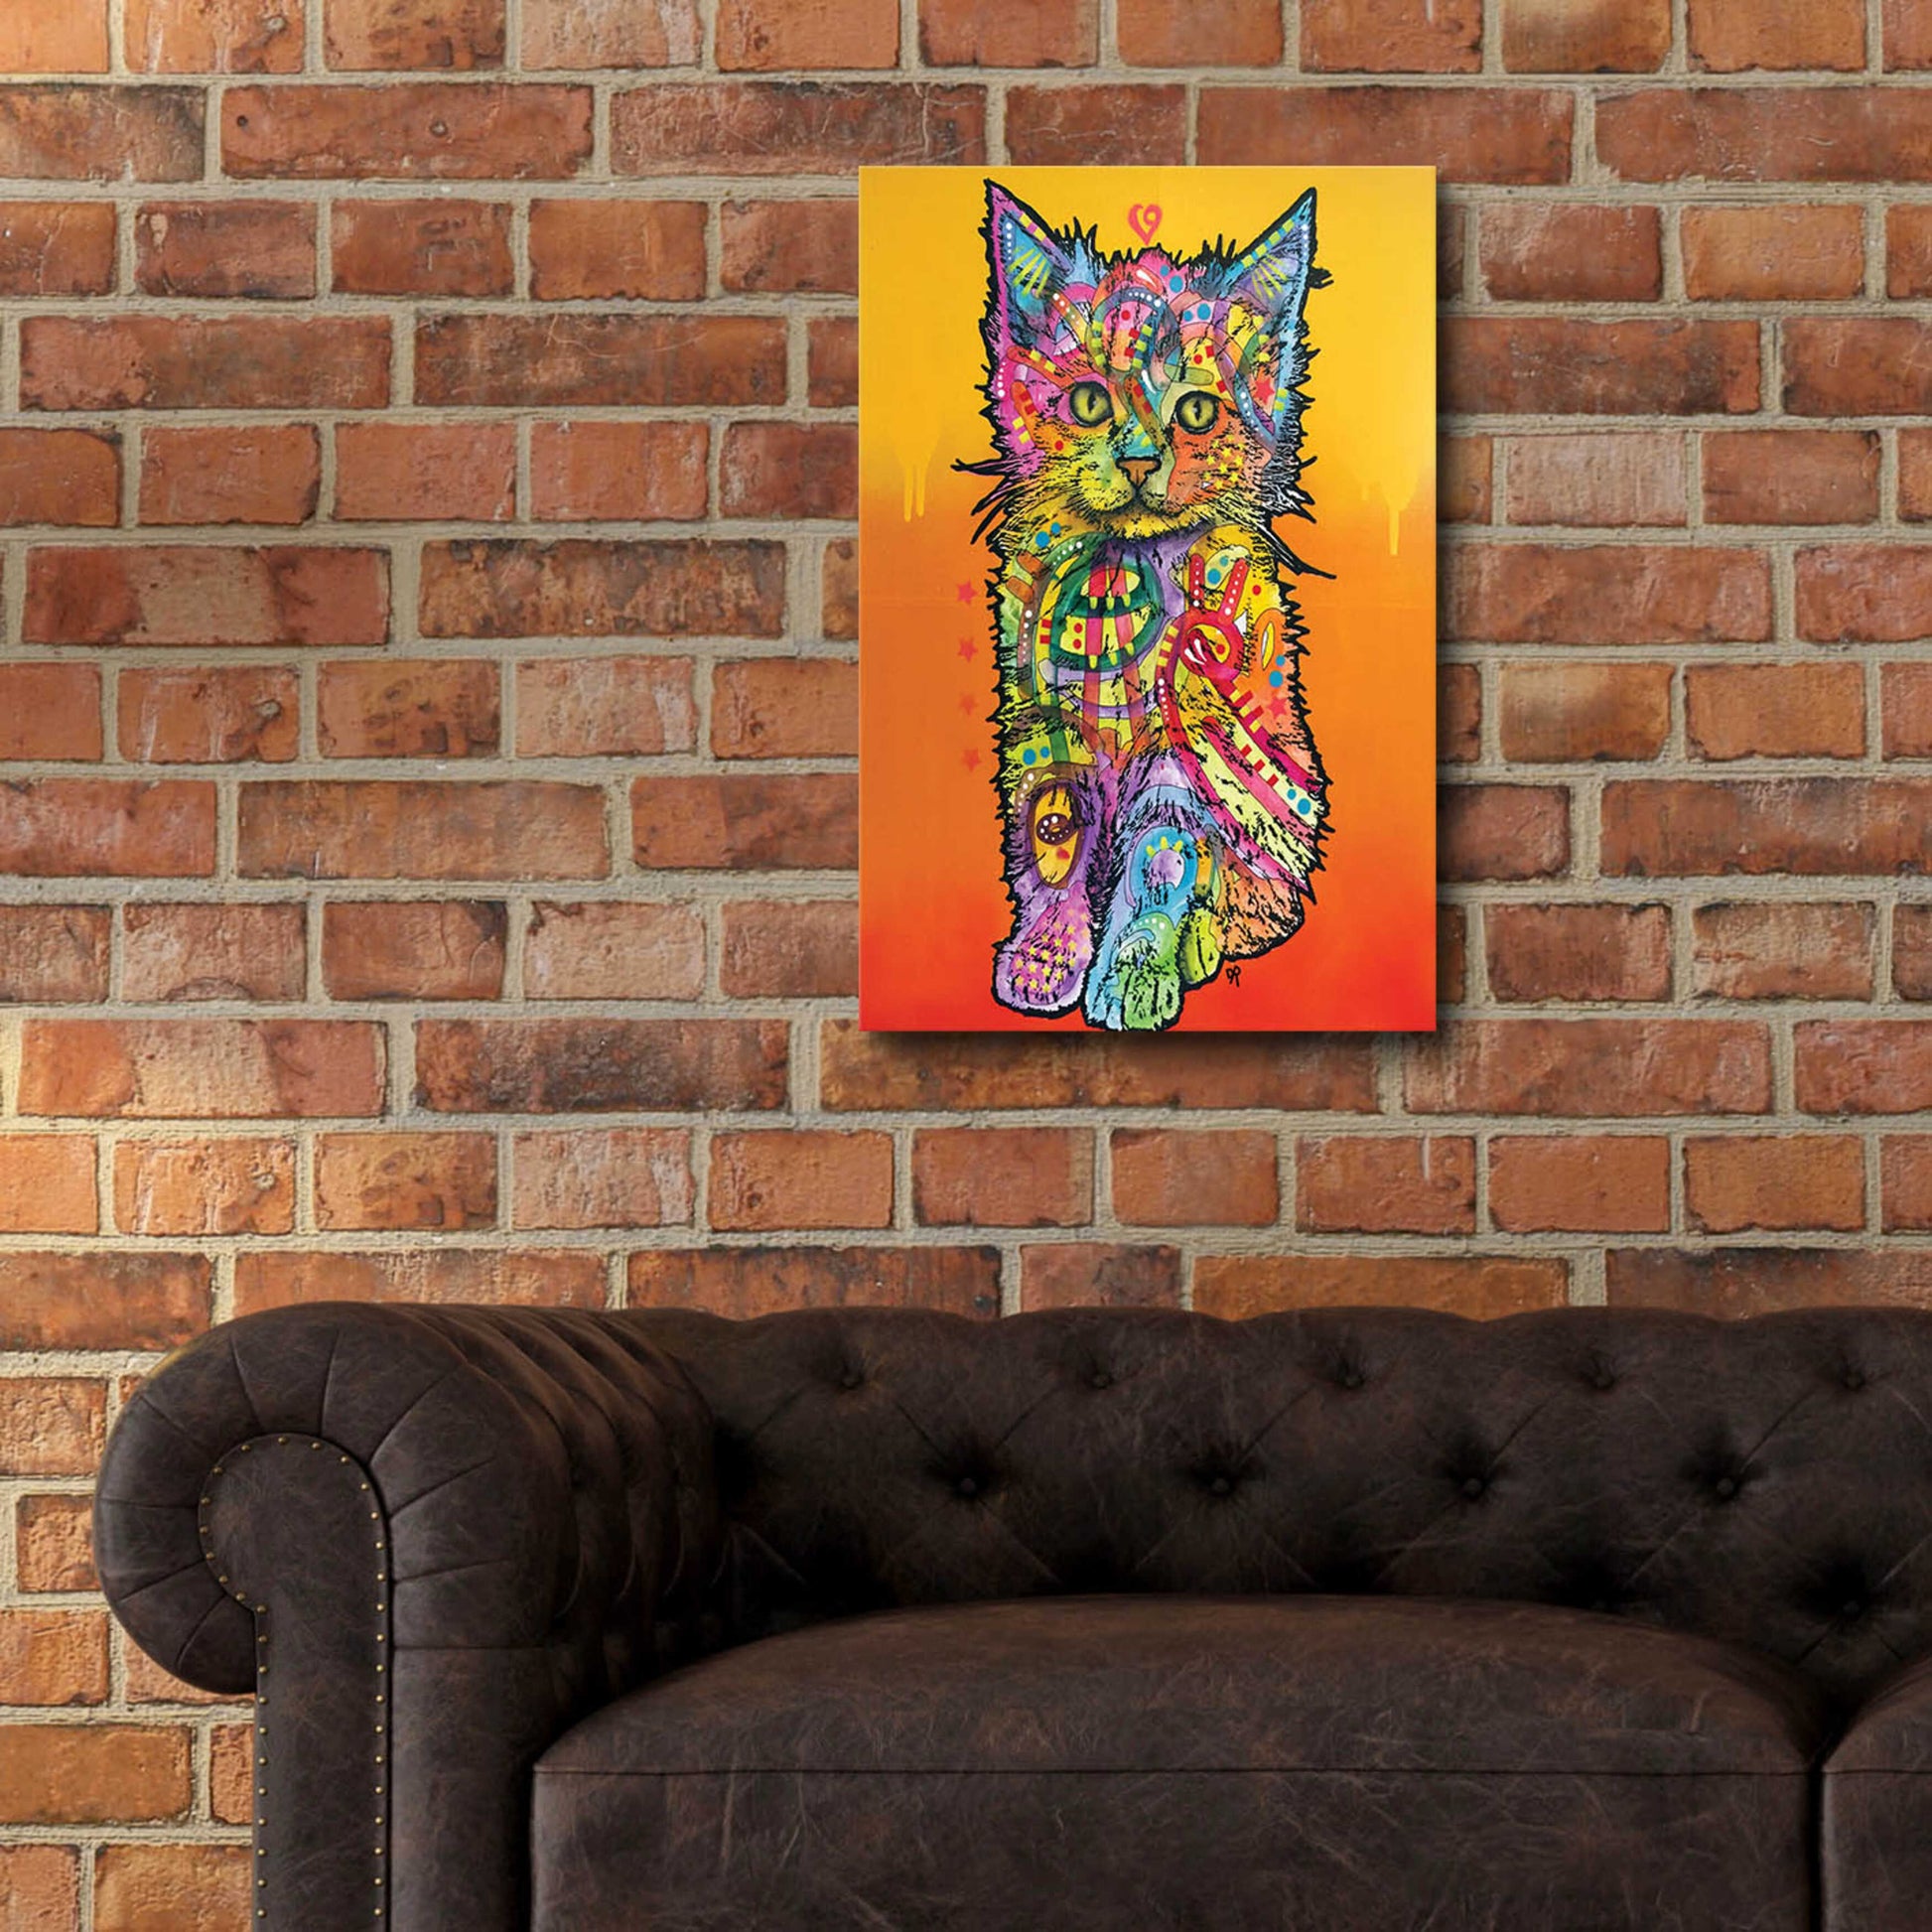 Epic Art 'Love Kitten' by Dean Russo, Acrylic Glass Wall Art,16x24